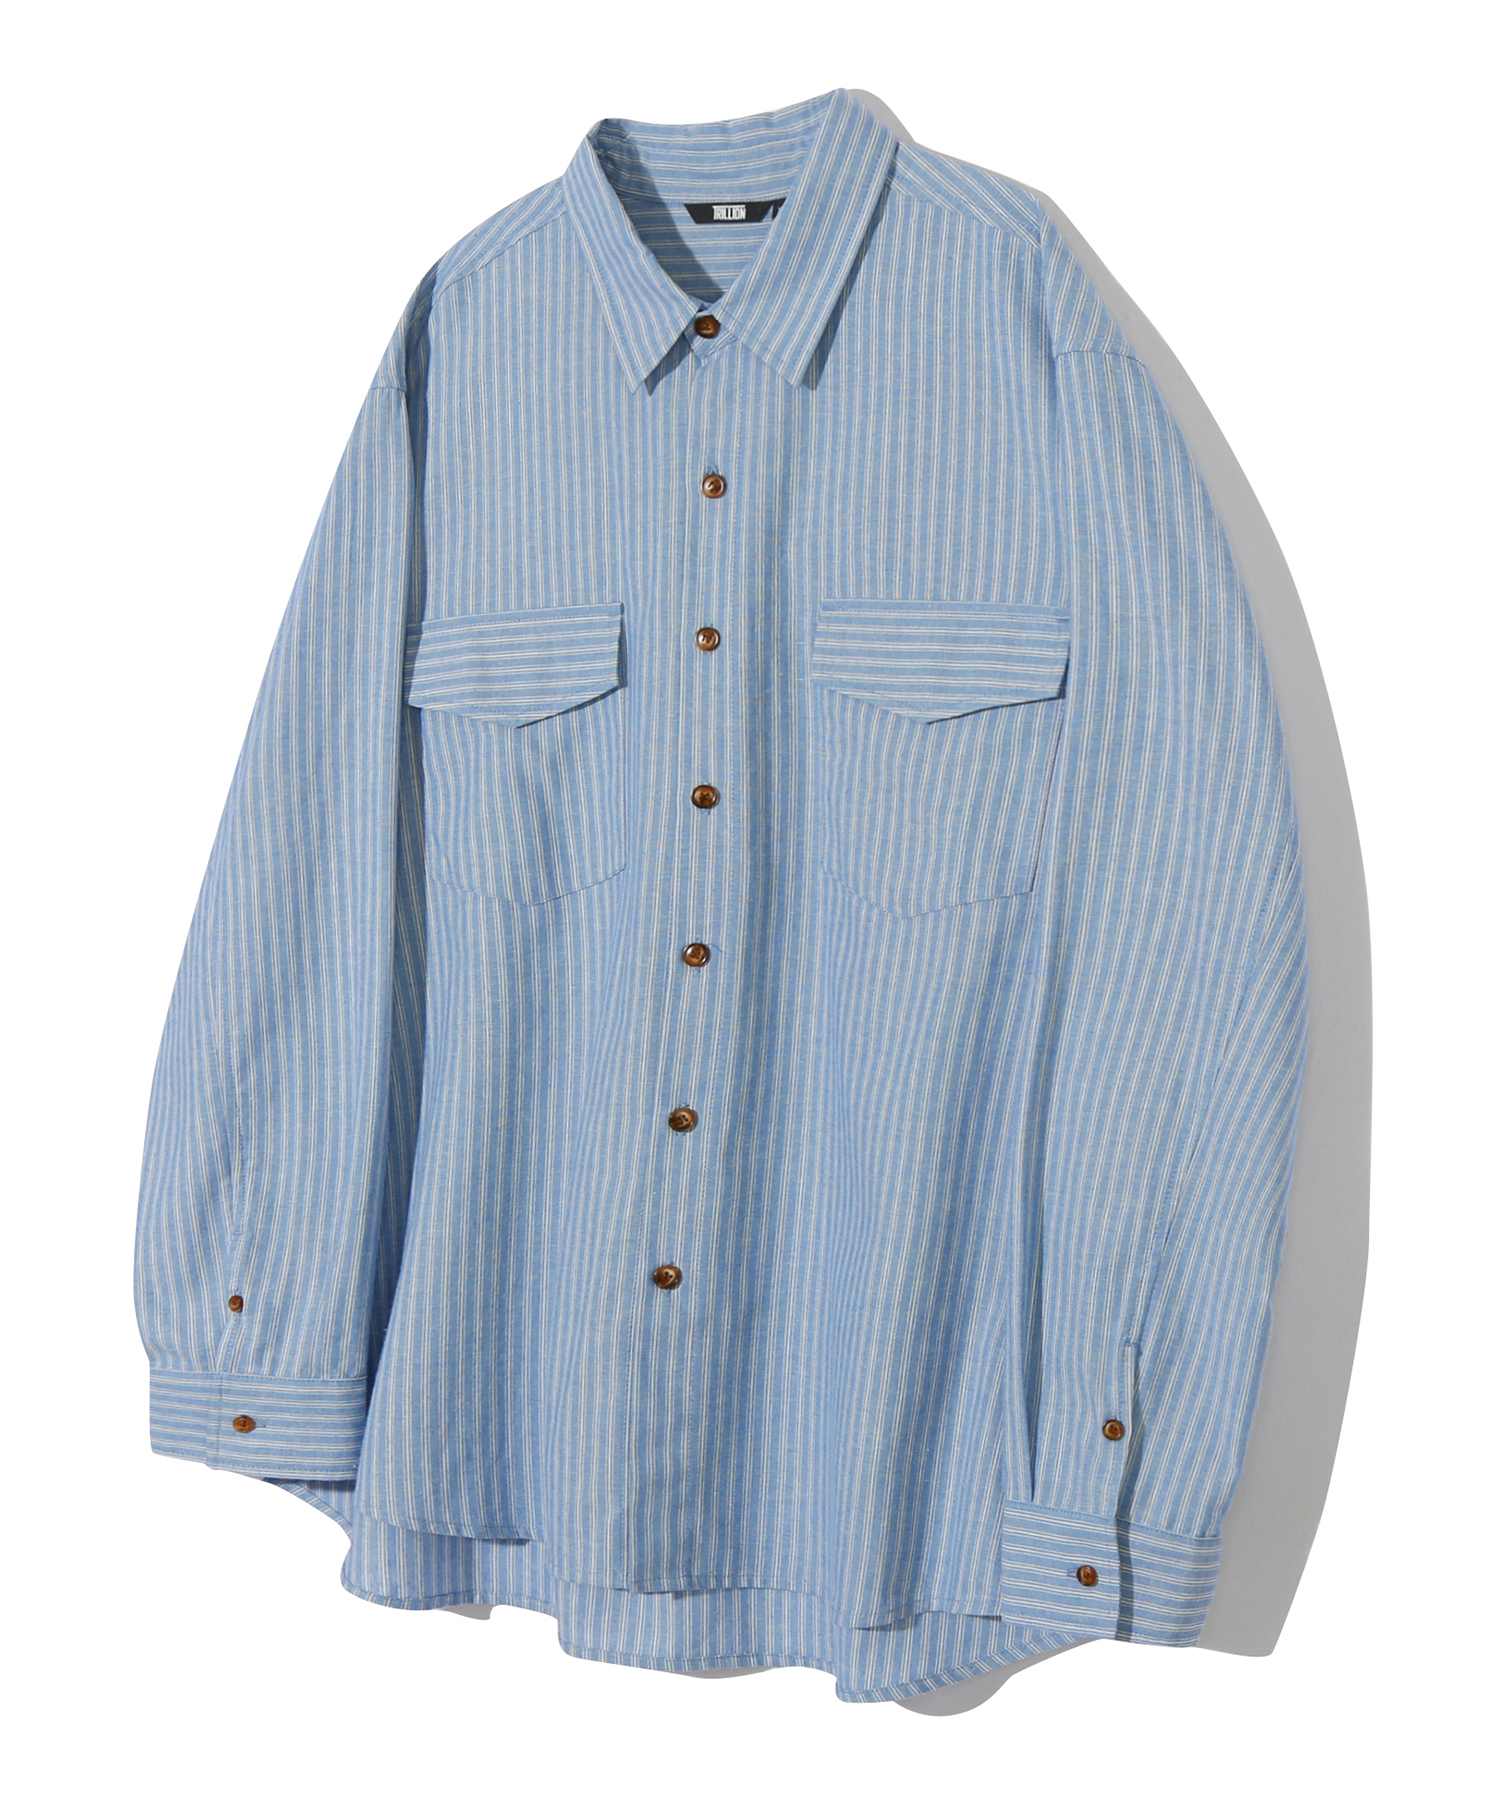 리조트 오가닉 스트라이프 오버핏 셔츠 (SKY BLUE)